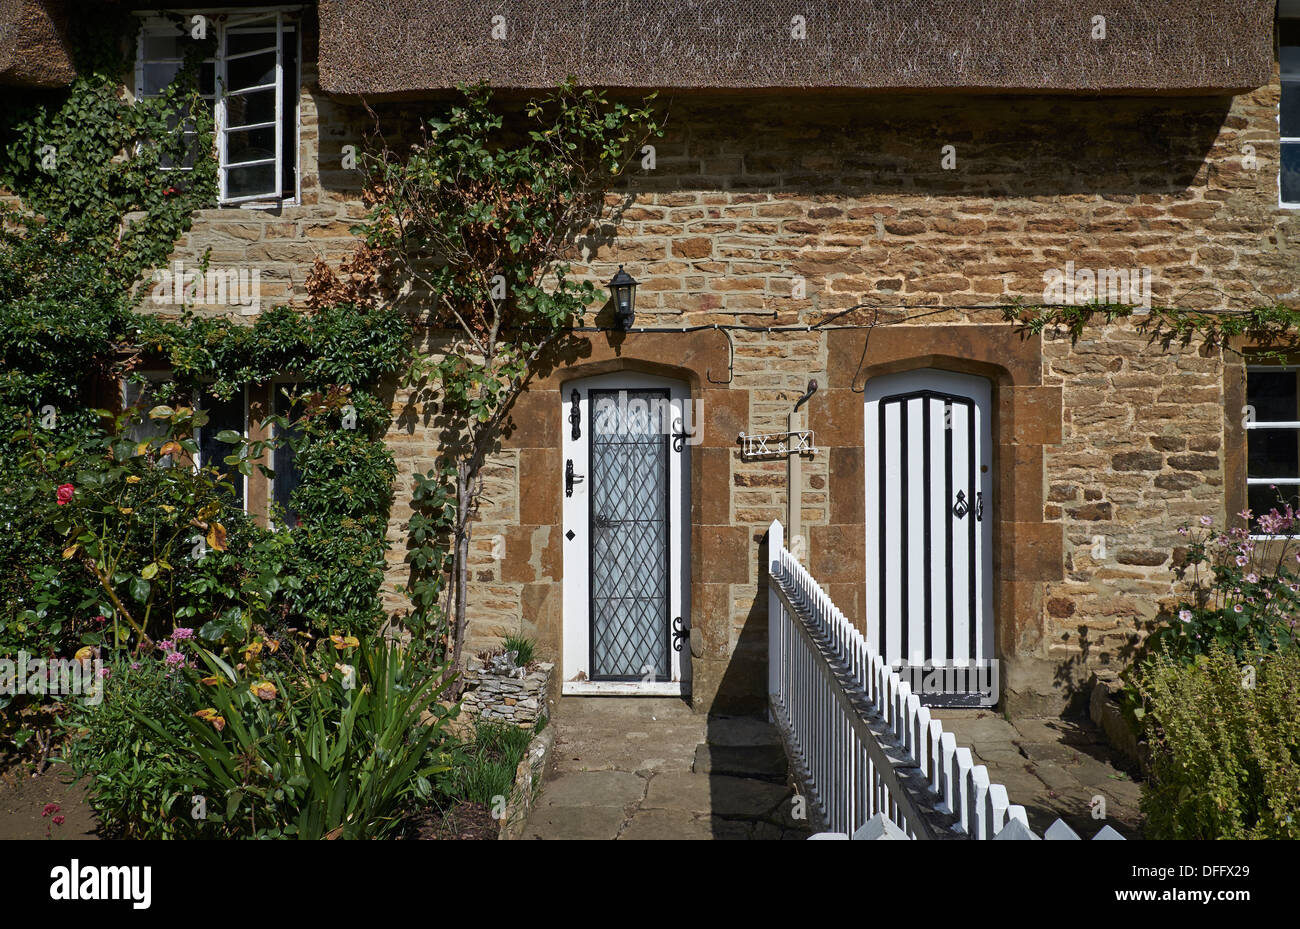 Cottage Royaume-Uni. Terrasse traditionnelle Cotswold période de pierre de campagne anglaise extérieur et portes d'entrée ravissantes. Angleterre Royaume-Uni Banque D'Images